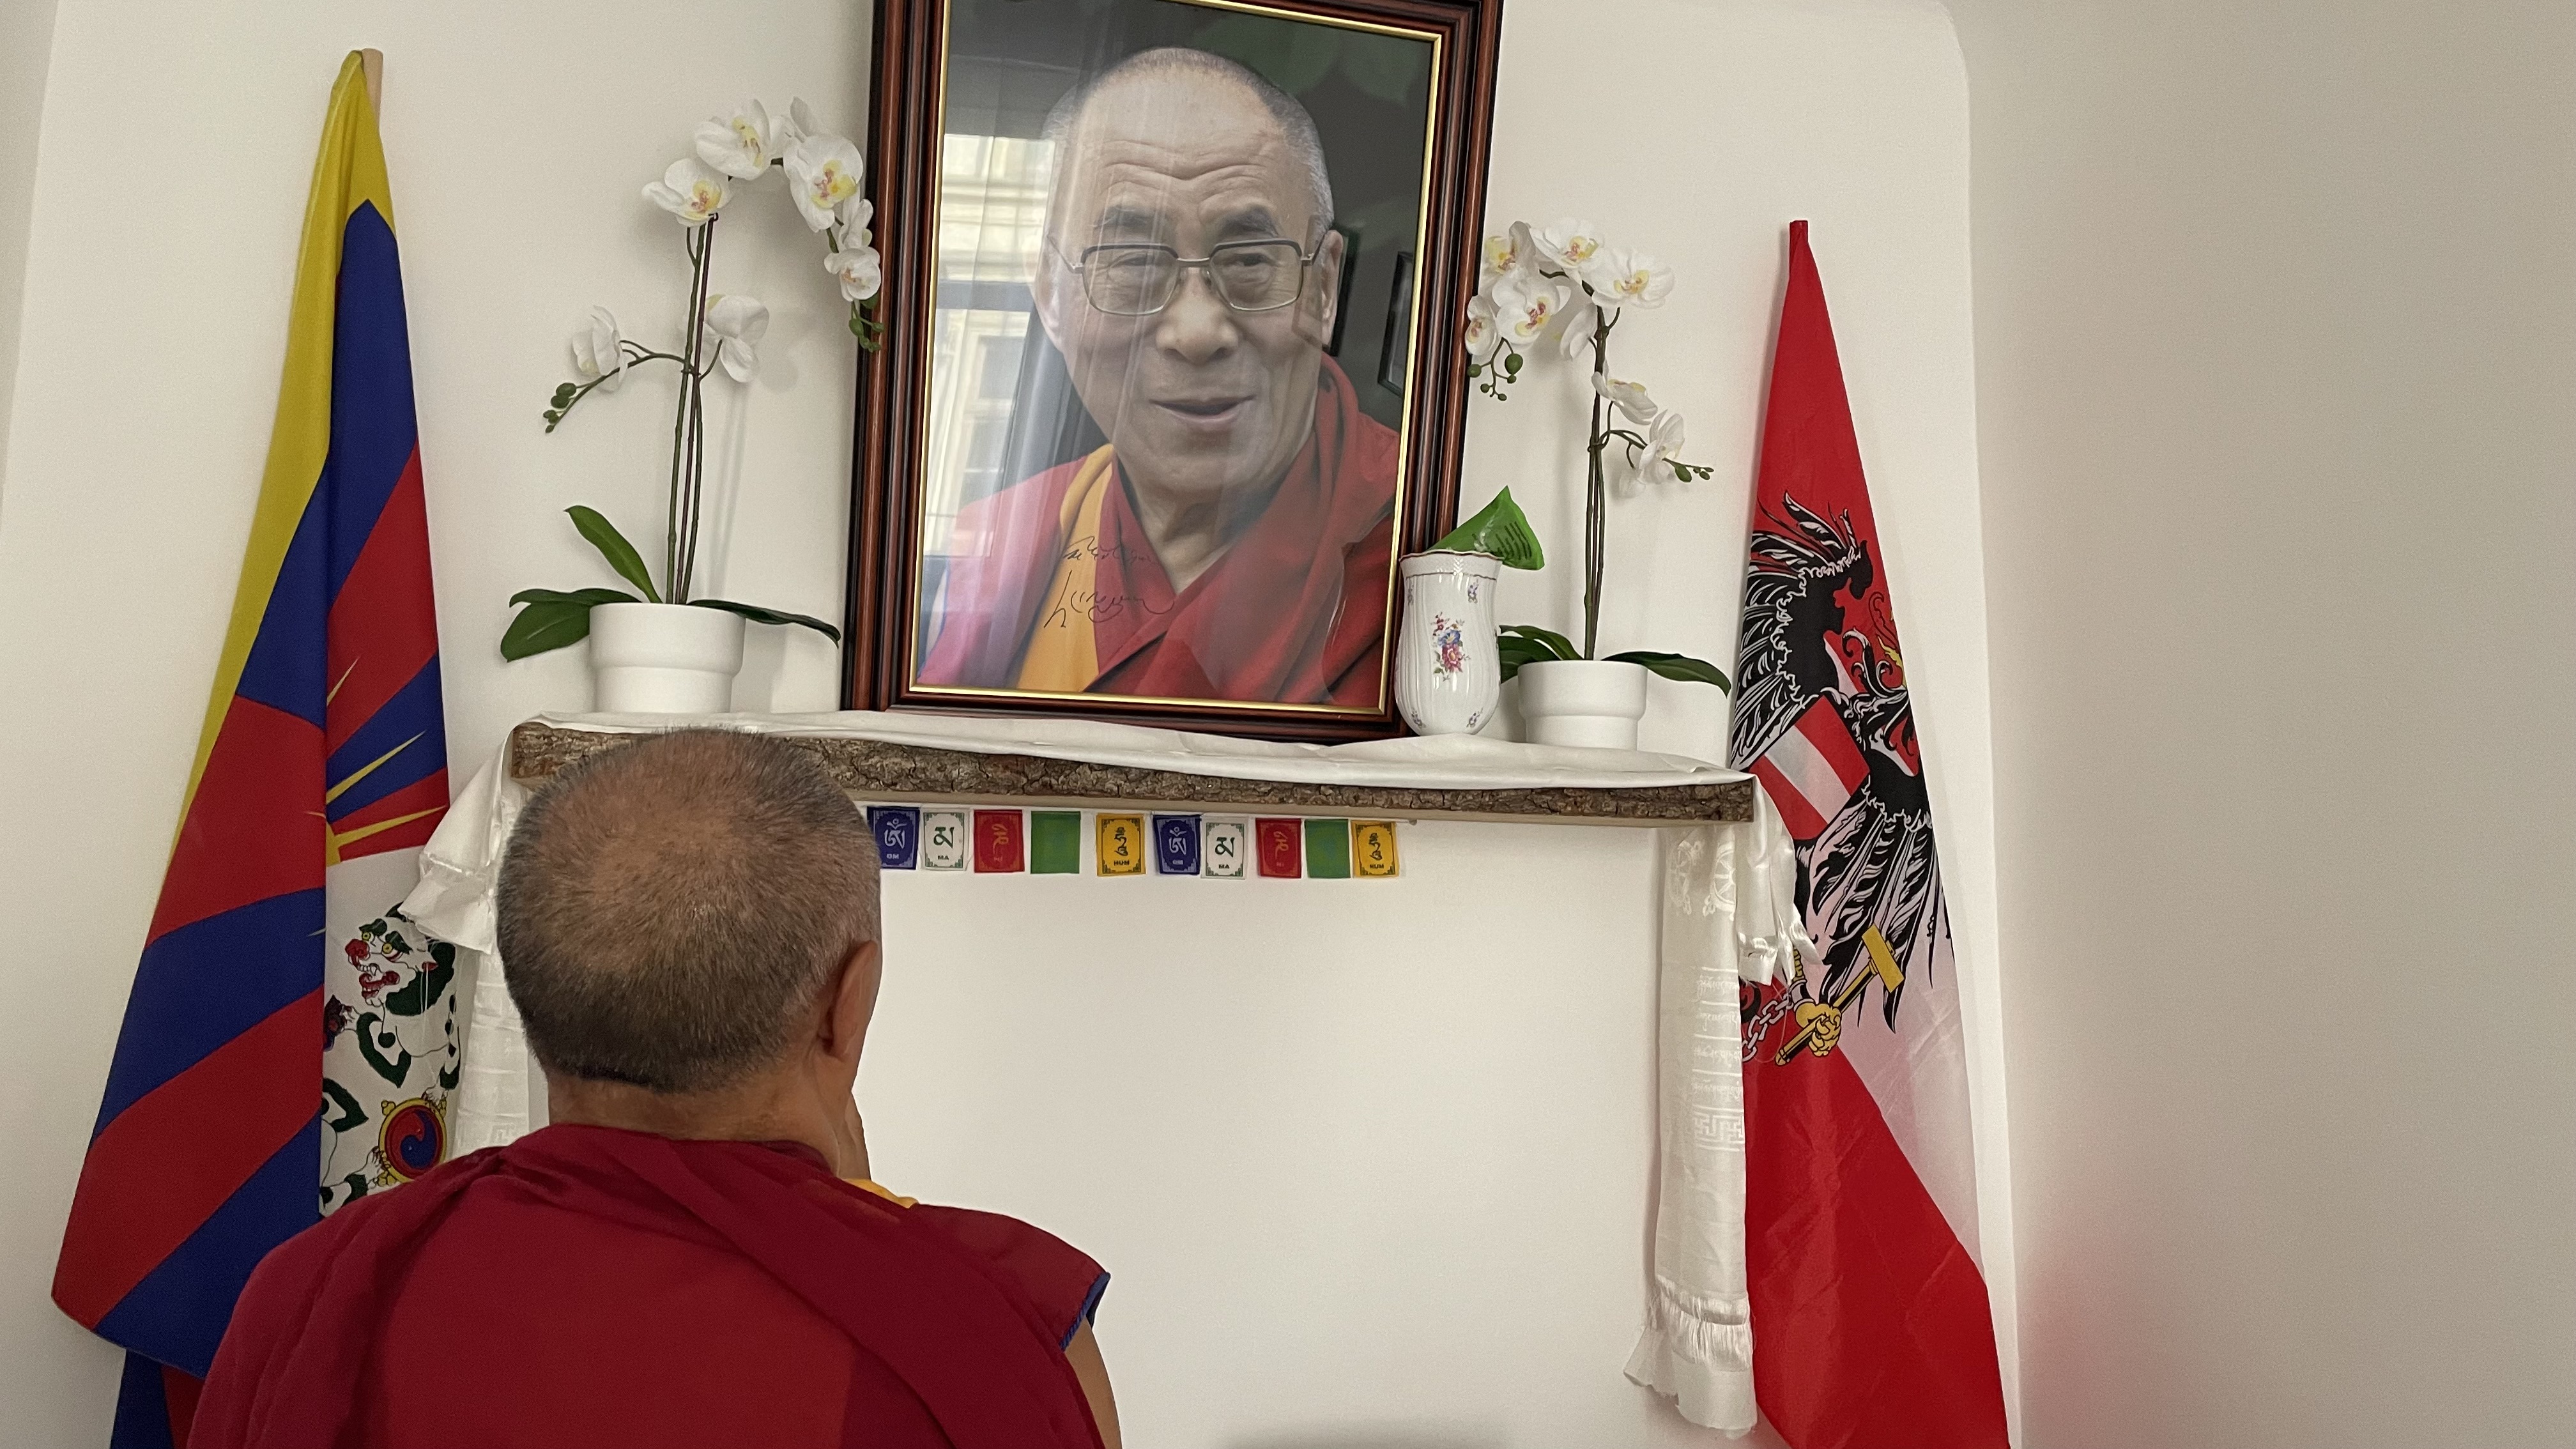 Ein Gebet vor dem Bild Seiner Heiligkeit dem 14. Dalai Lama von Tibet